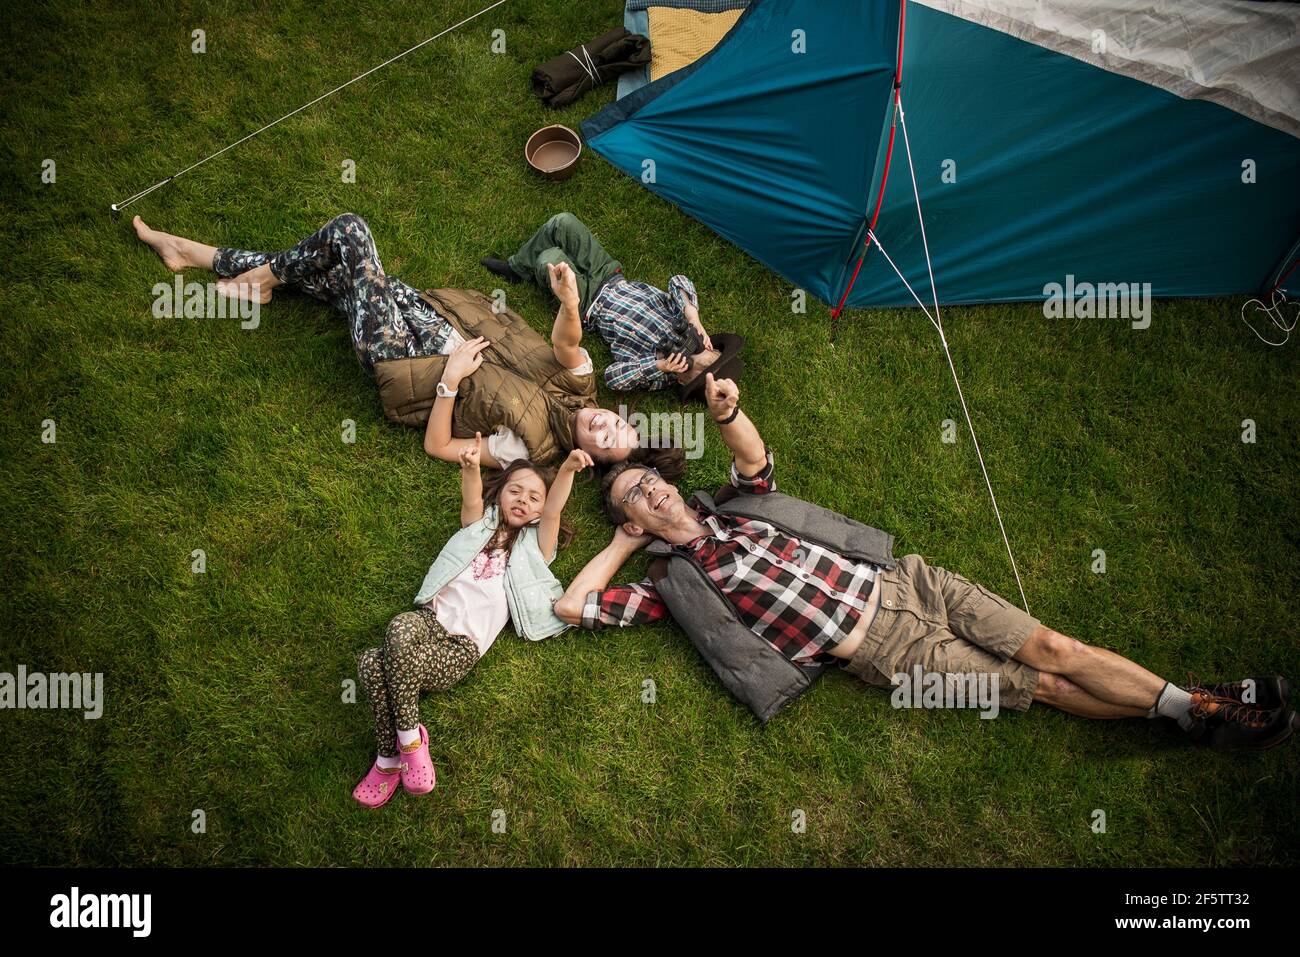 Alegre familia reponiendo en un campamento de verano Foto de stock